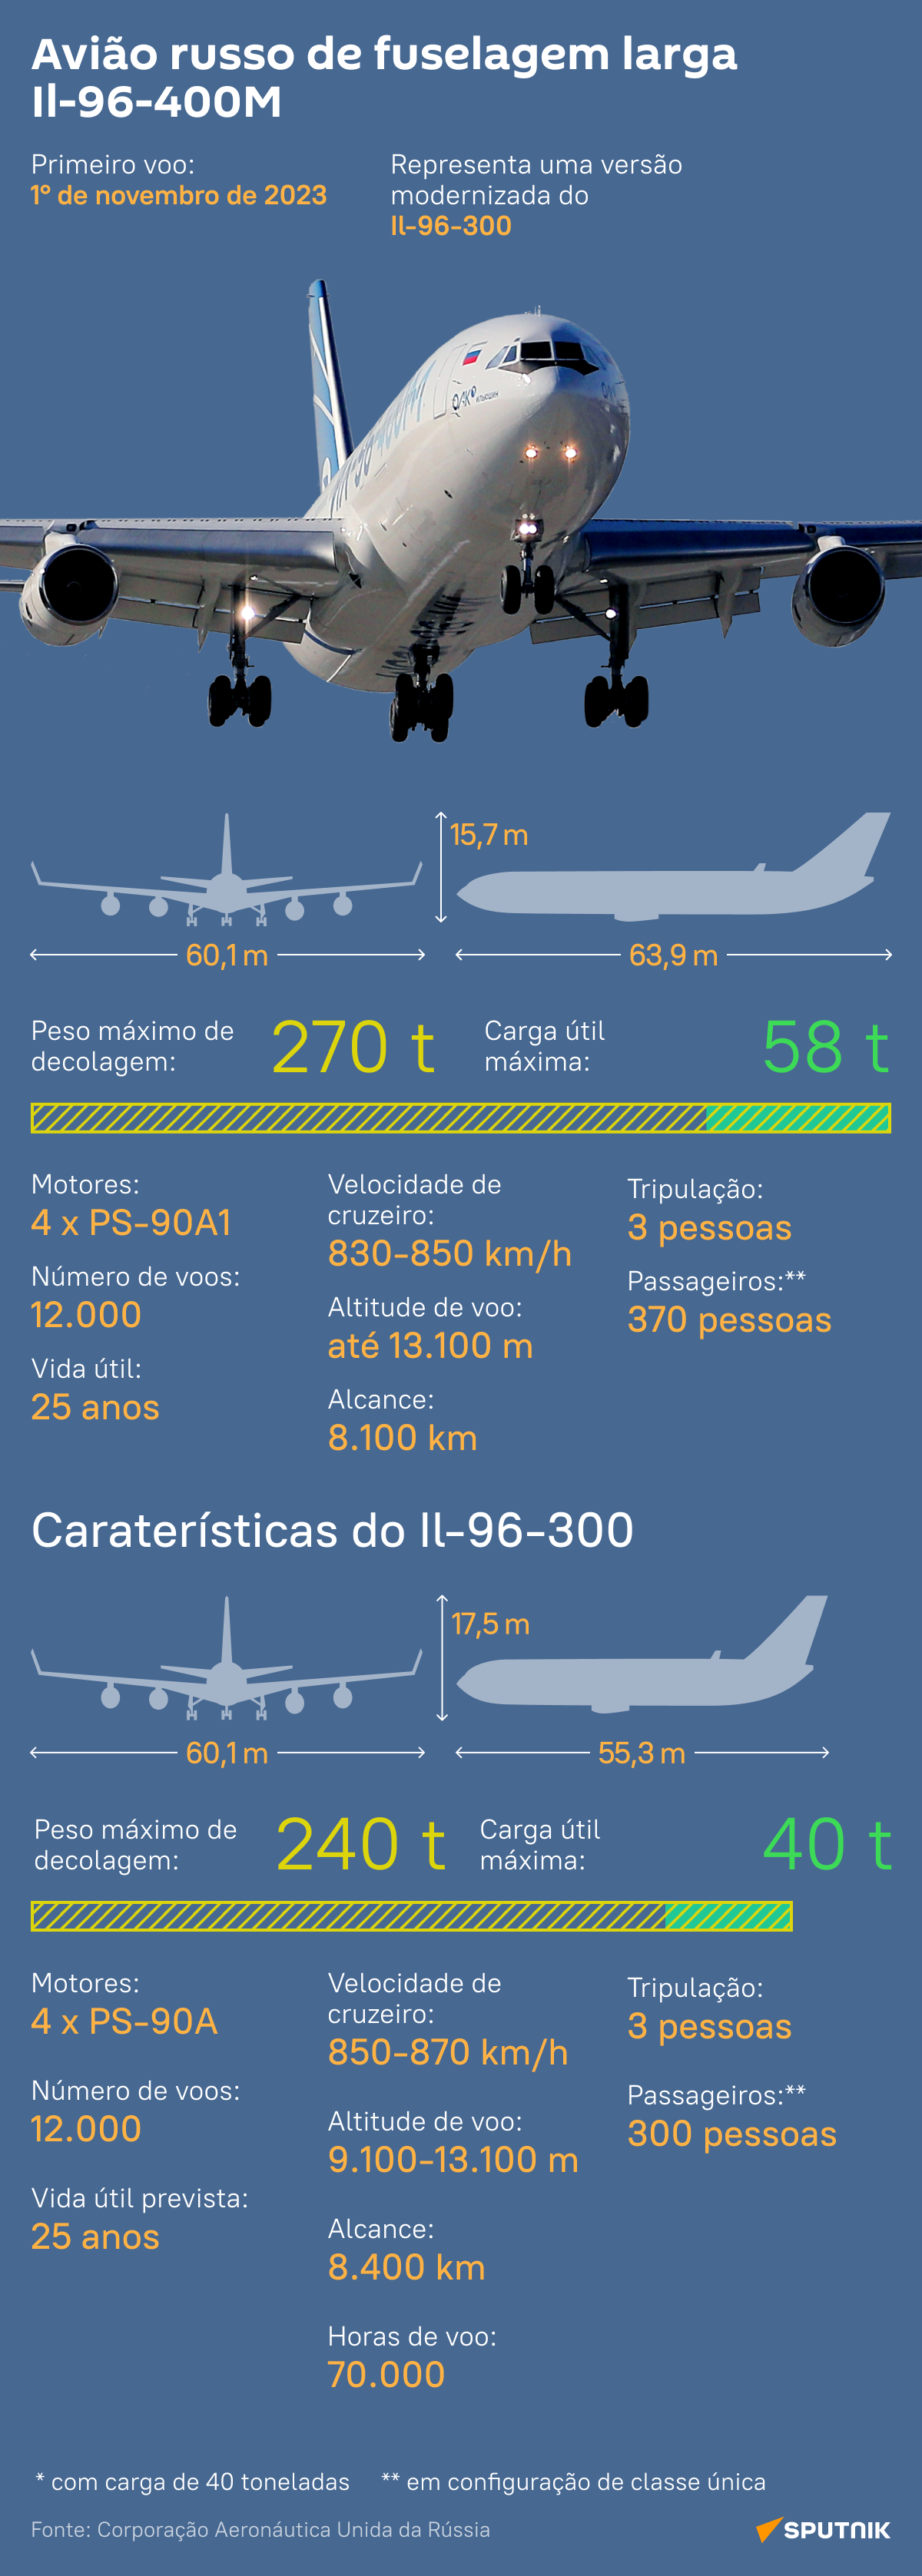 Avião russo de nova geração: conheça o Il-96-400M - Sputnik Brasil